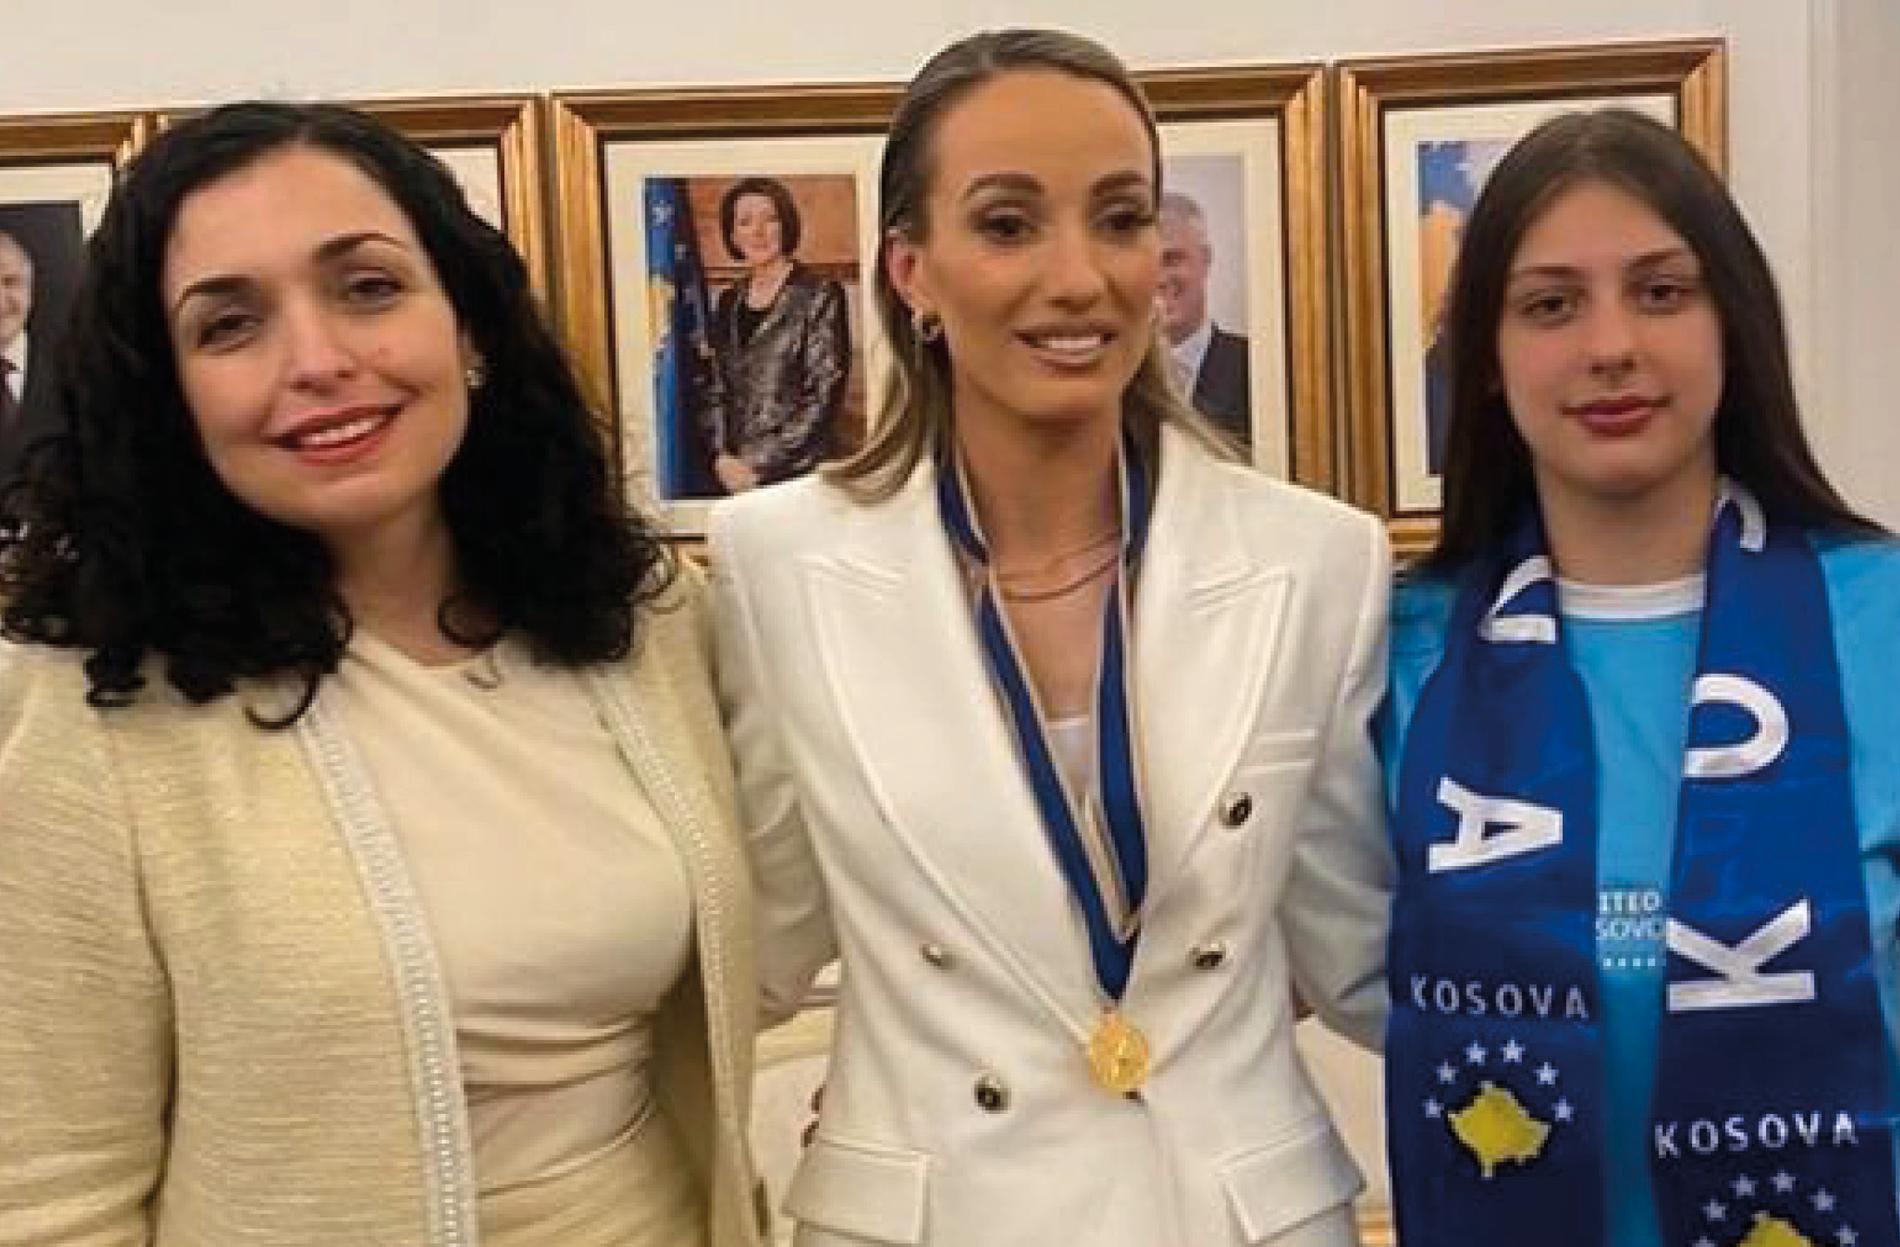 Kosovare Asllani tog emot en medalj av presidenten Vjosa Osmani för sitt arbete inom jämställdhet och fotboll.